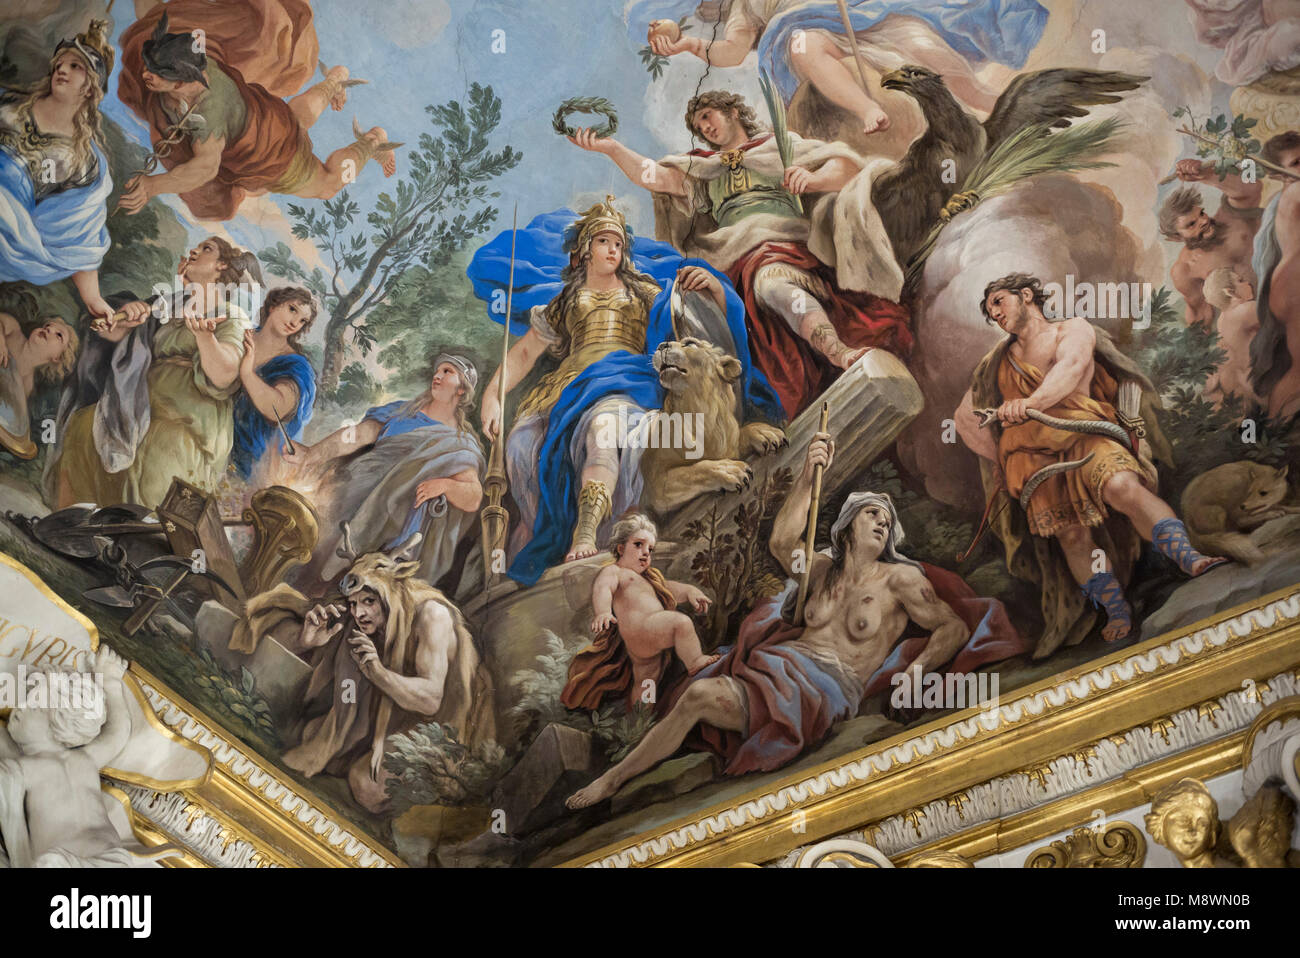 Florenz. Italien. Allegorie der Tapferkeit, Fresko, 1685, in der Galleria Riccardiana von Luca Giordano (1634-1705), der Palazzo Medici Riccardi. Allego Stockfoto